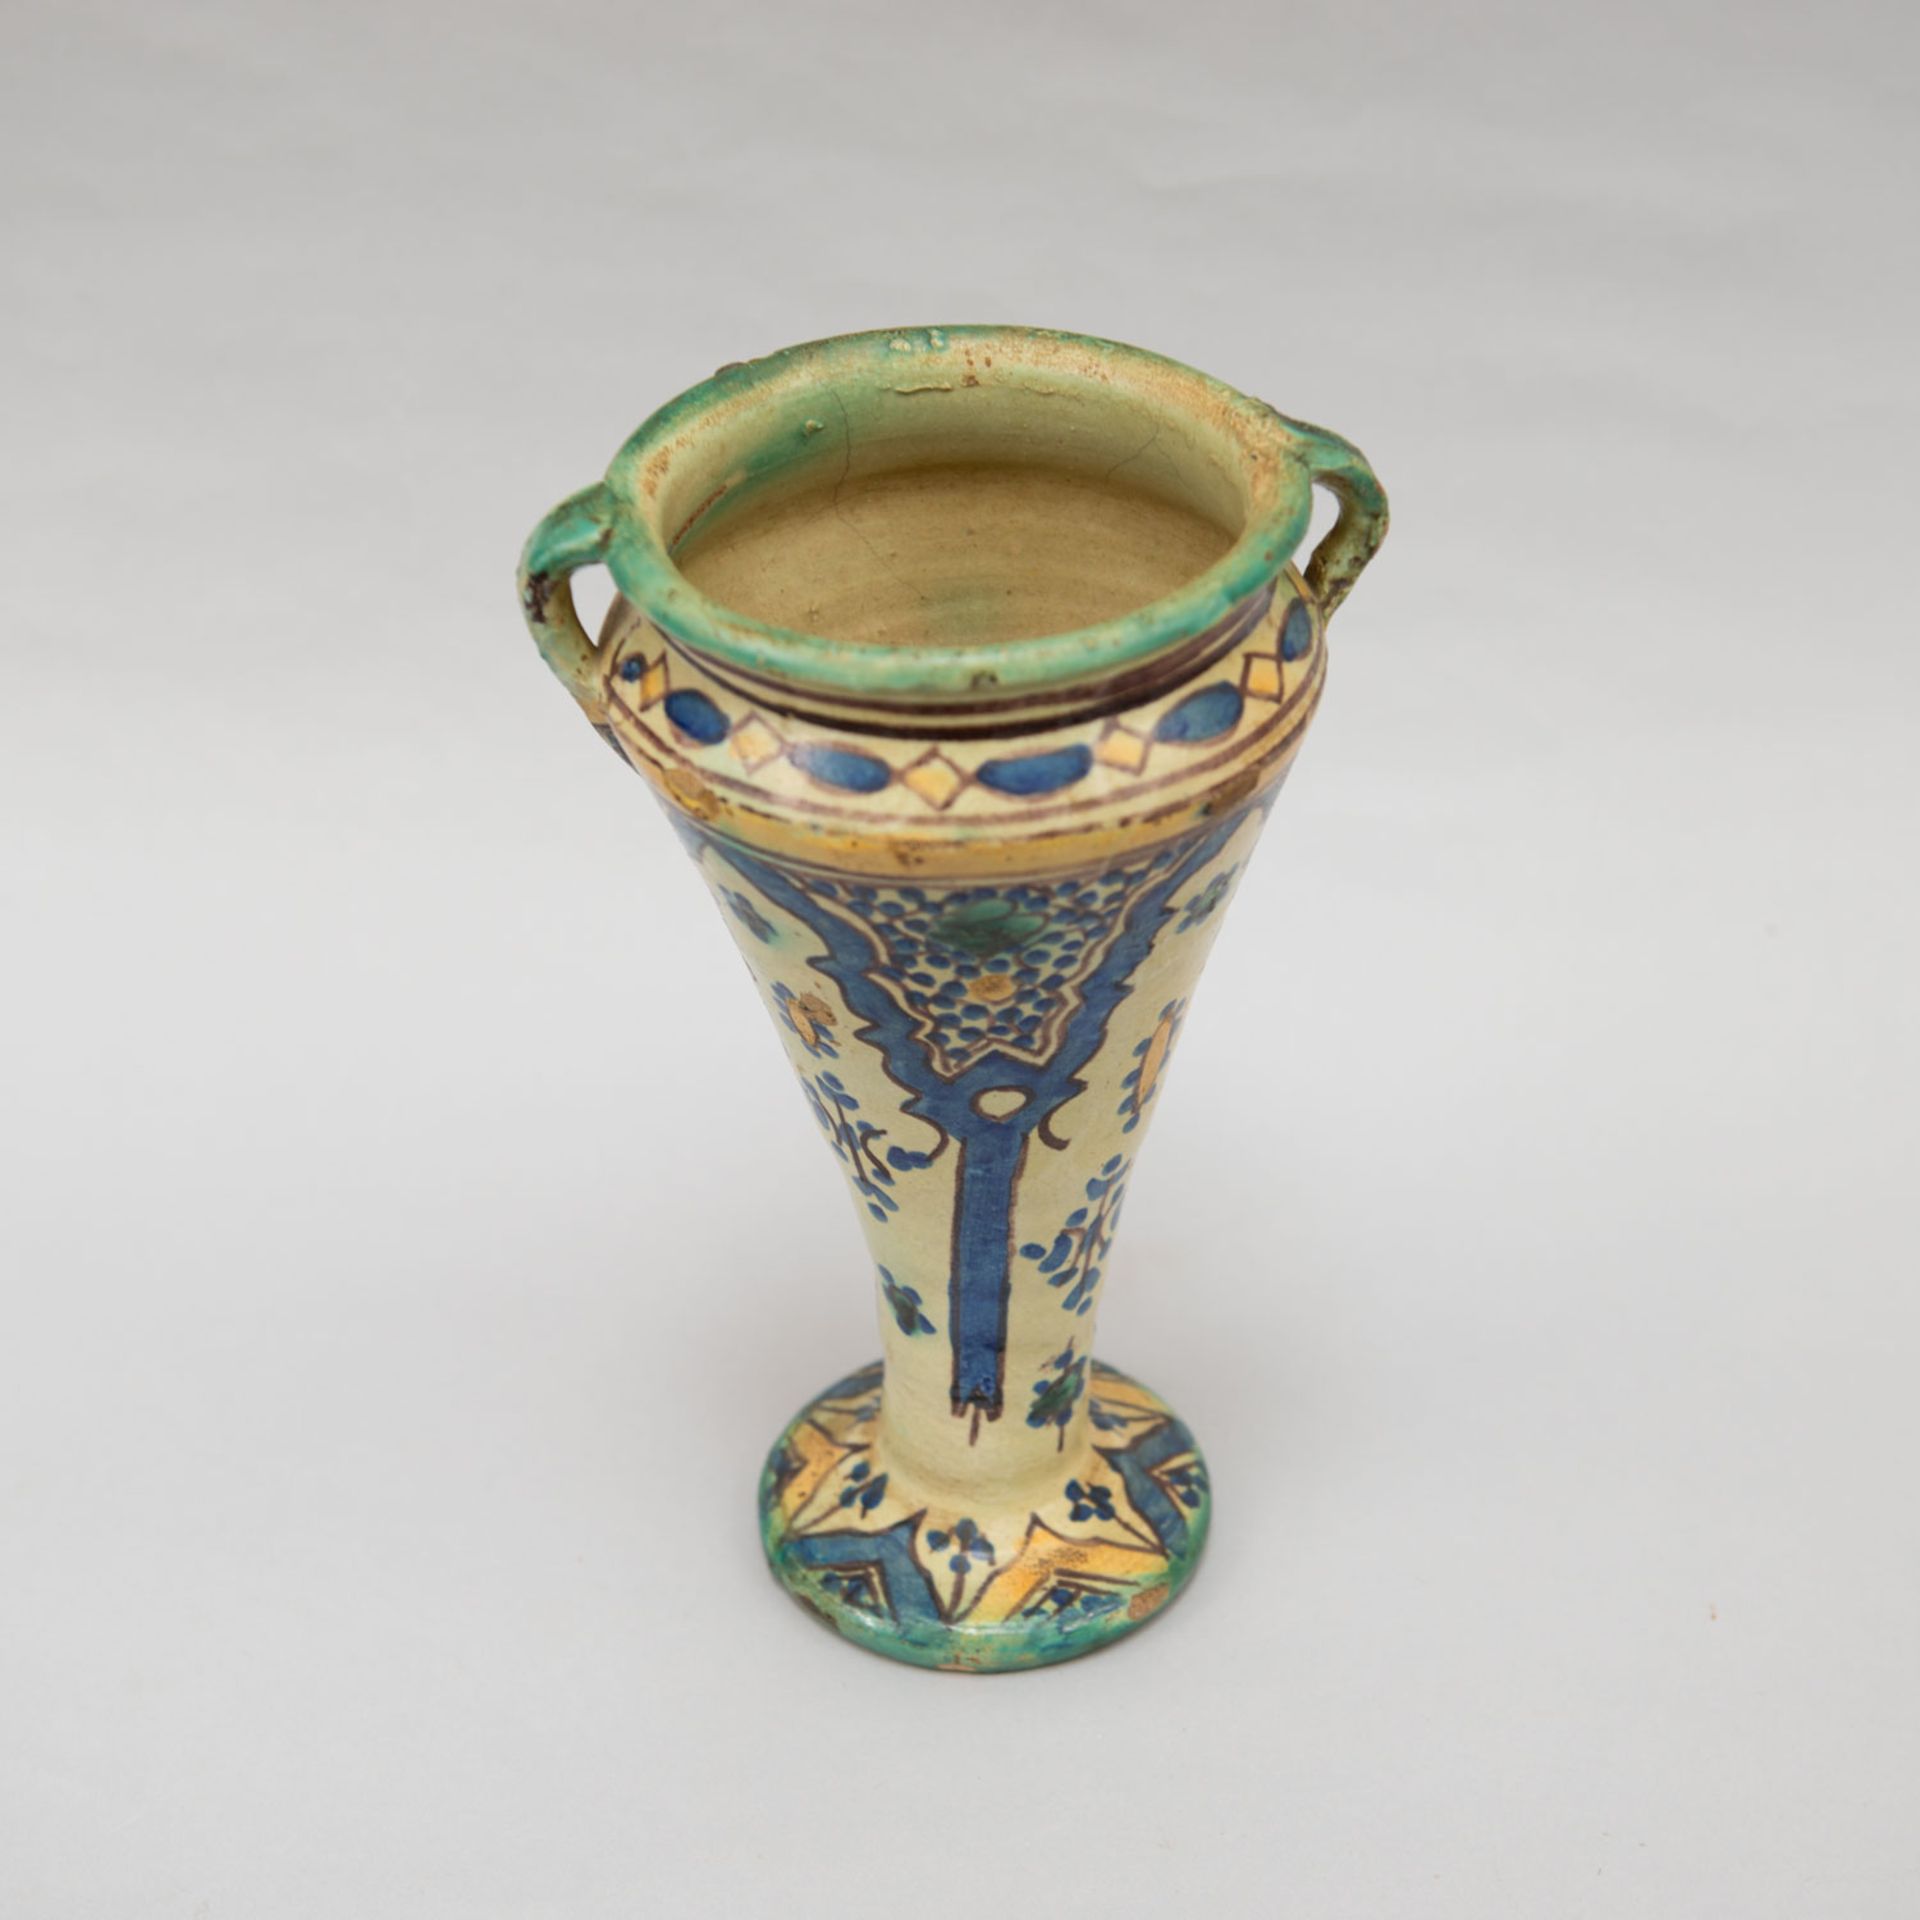 North African ceramic vase - Image 3 of 3